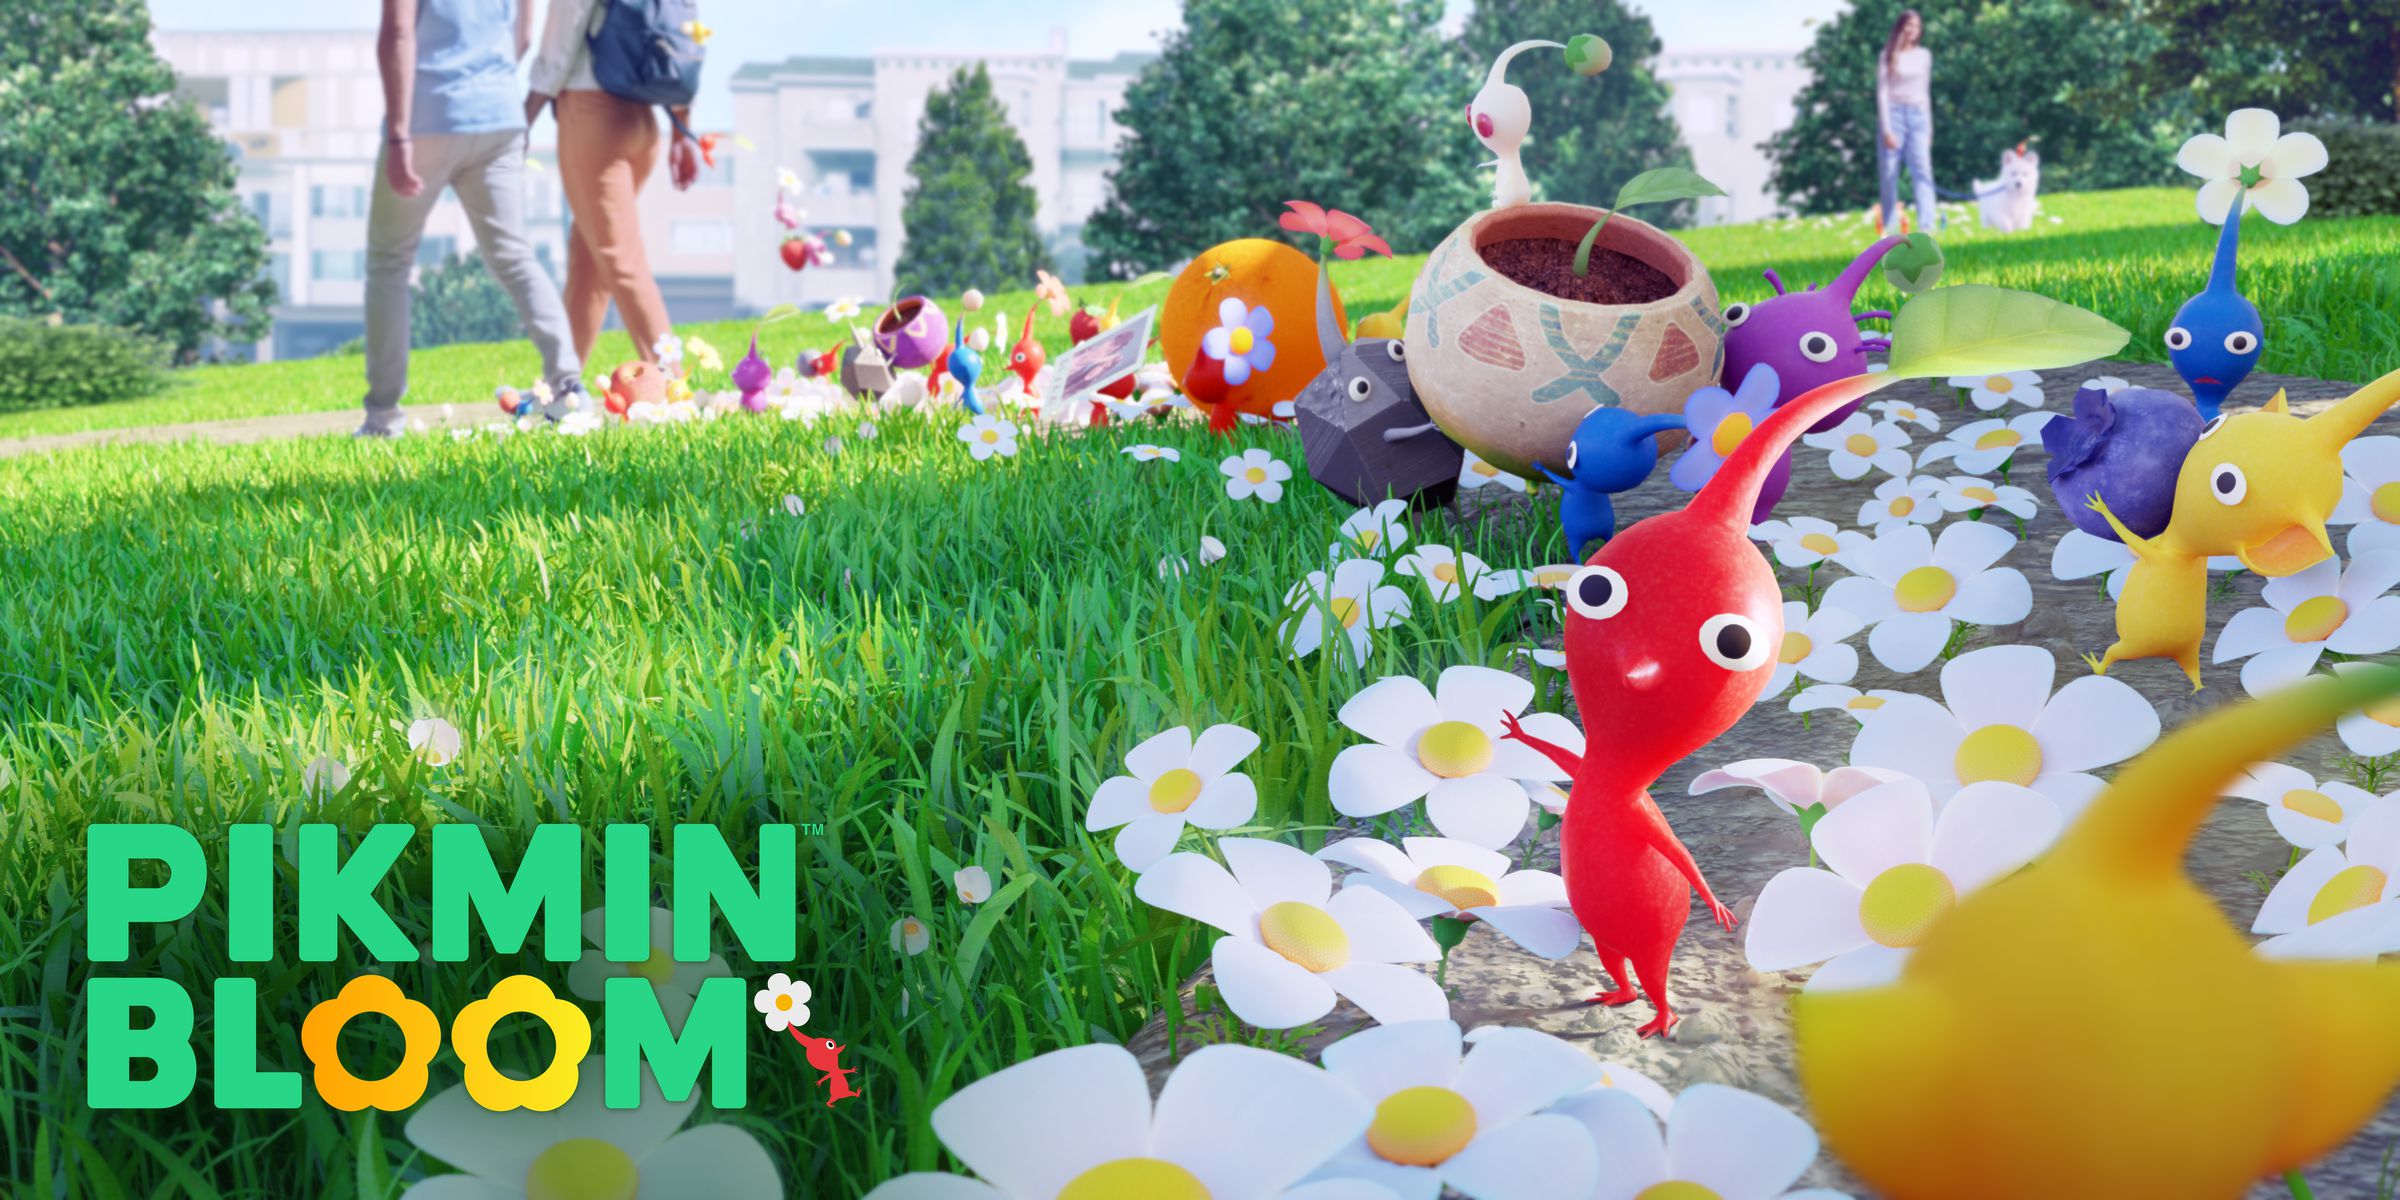 Tangkapan layar Pikmin Bloom: Makhluk kecil penuh warna dengan kepala besar di tengah taman yang penuh bunga aster.